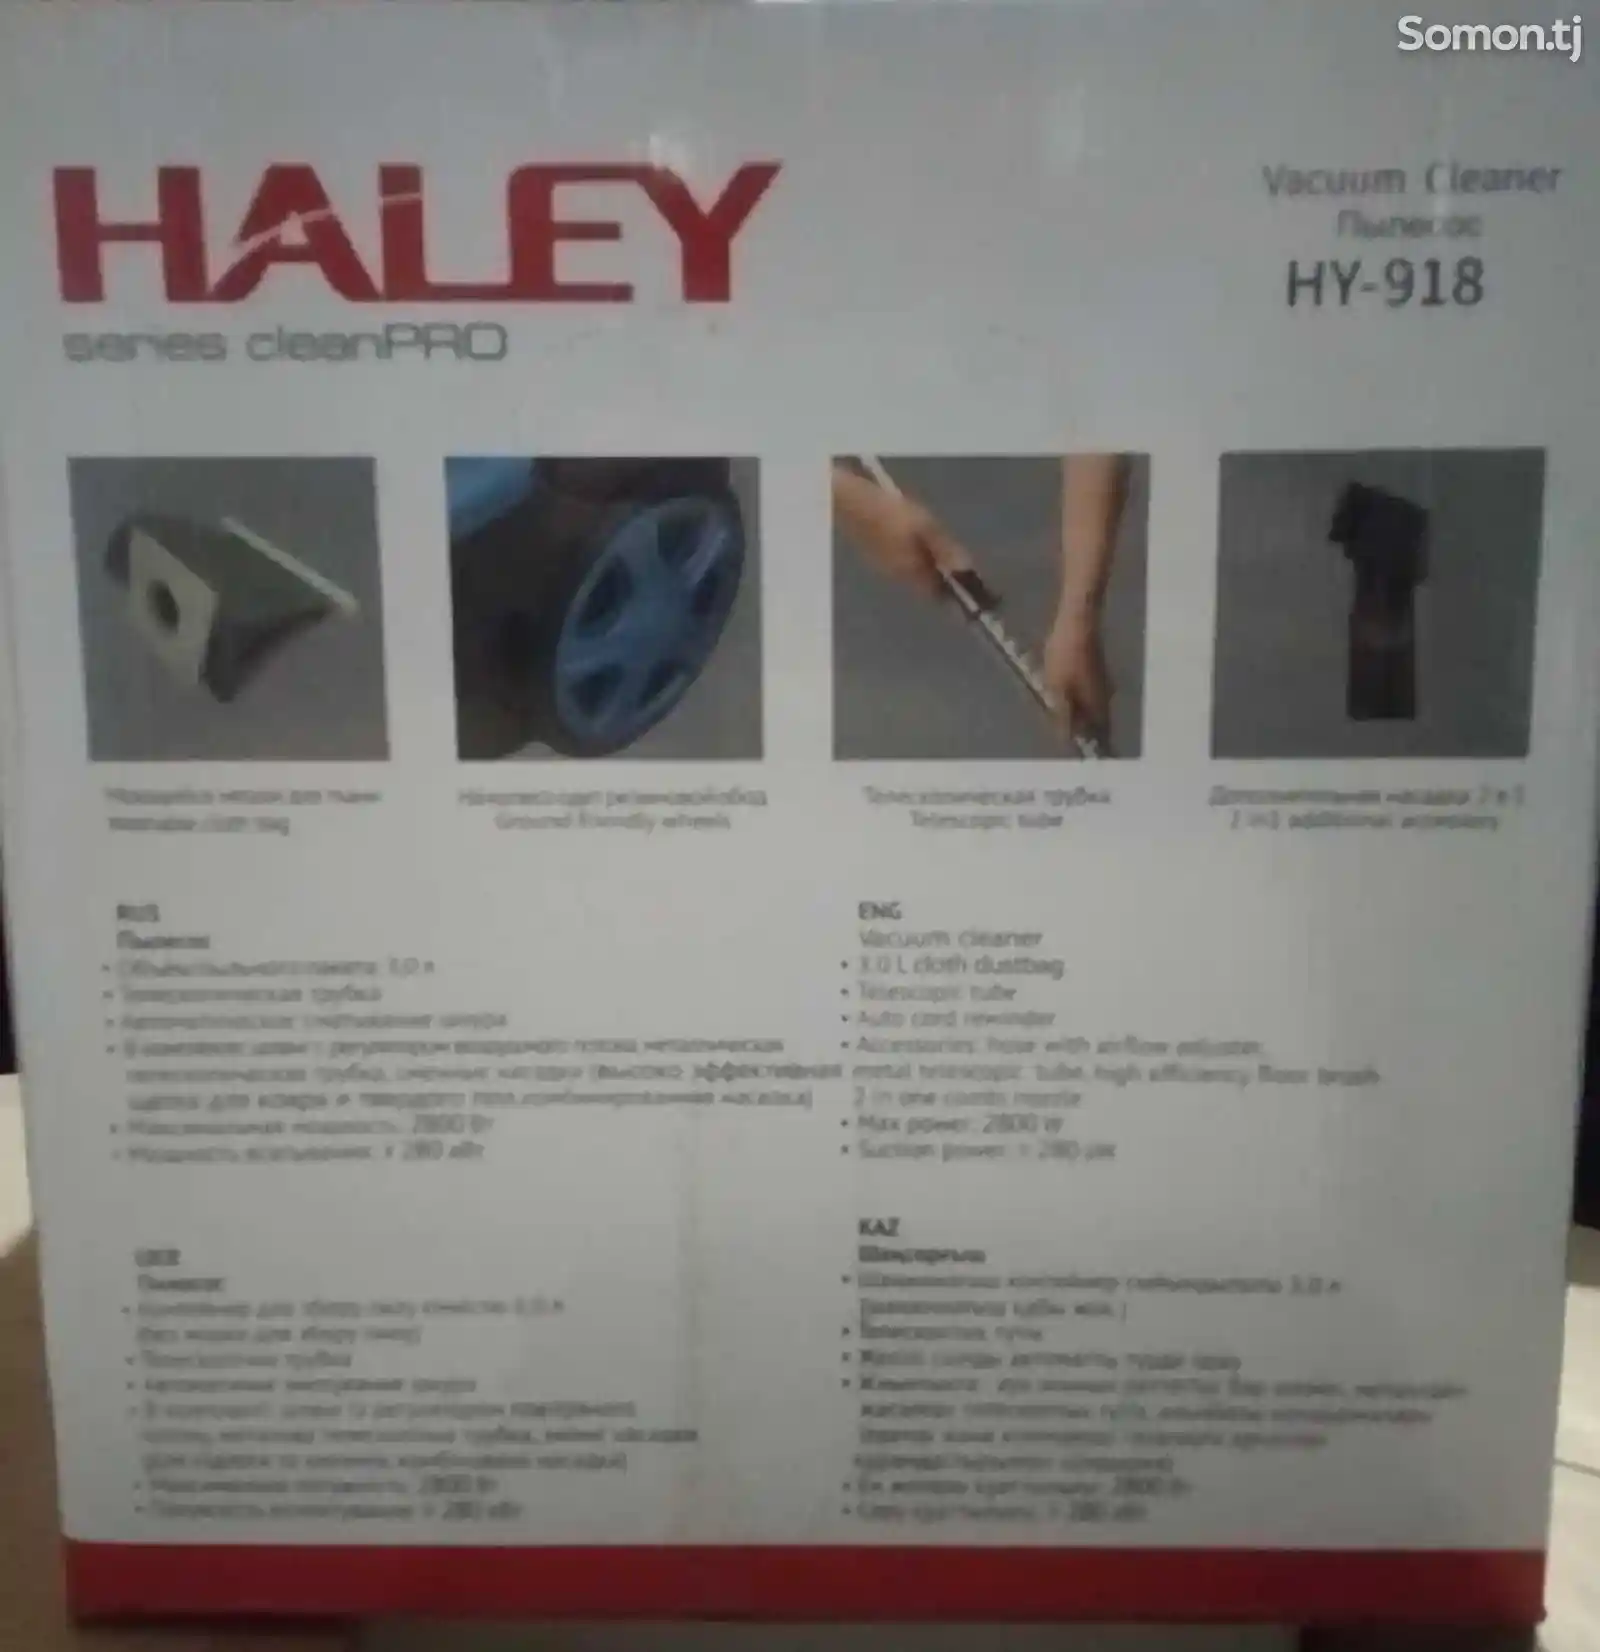 Пылесос Haley HY-918-3